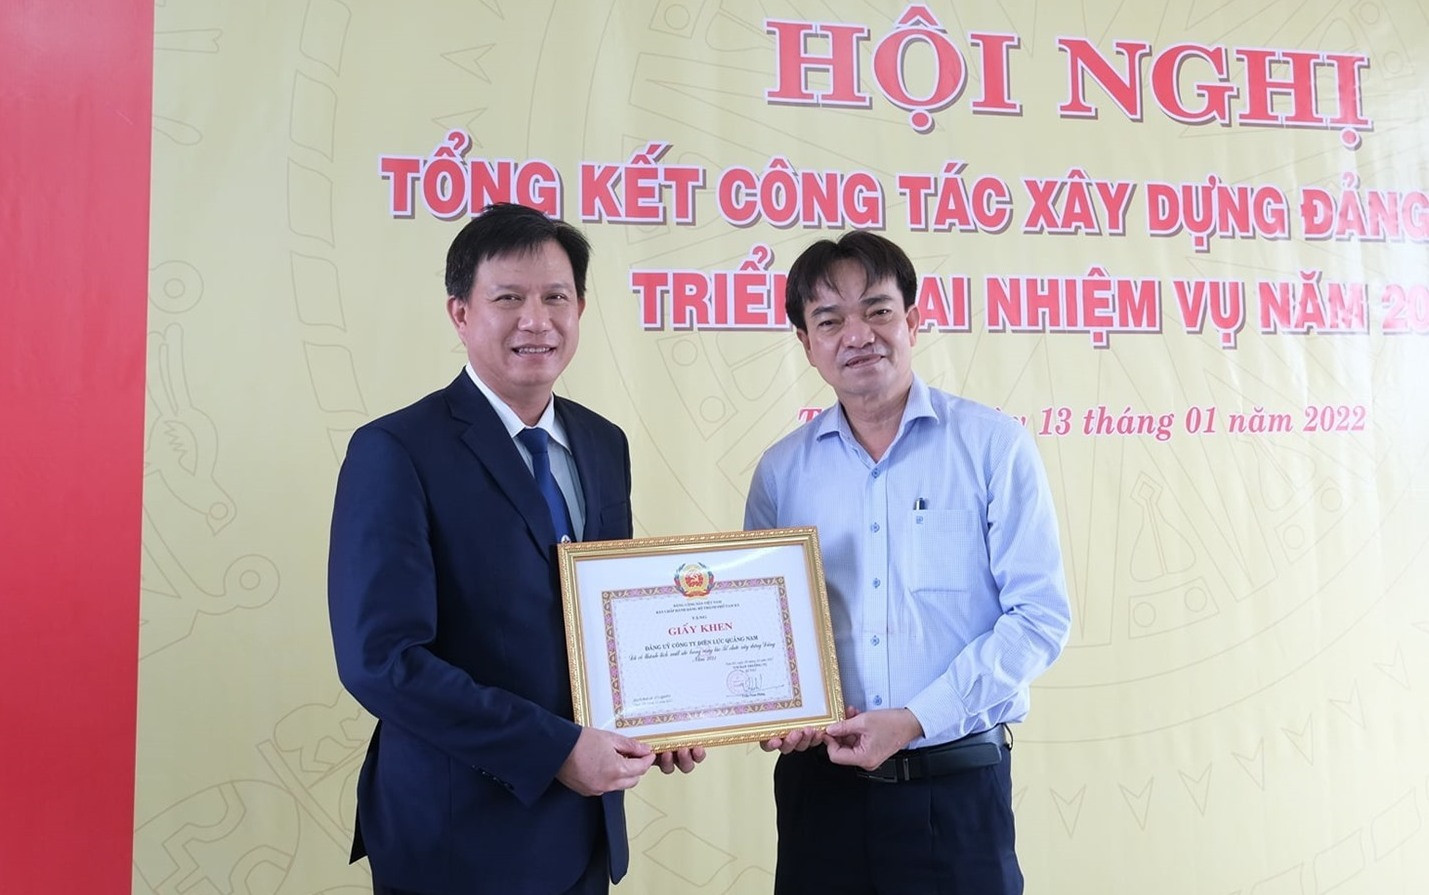 Thành ủy Tam Kỳ biểu dương Đảng ủy PC Quảng Nam vì “đã có thành tích xuất sắc trong công tác tổ chức xây dựng Đảng năm 2021”.